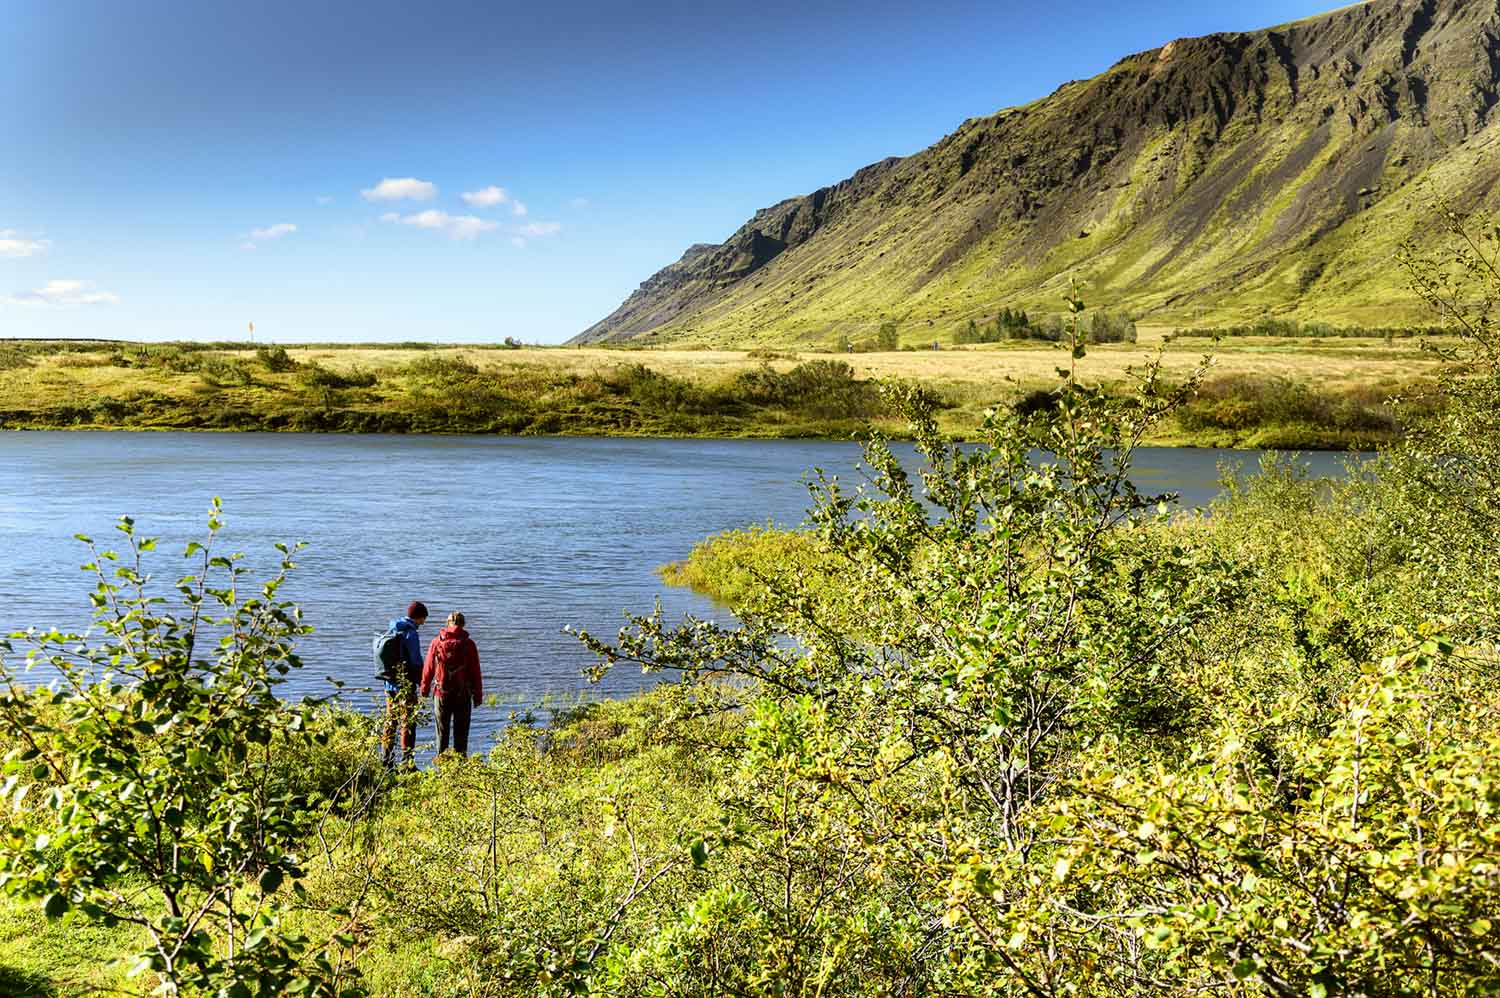 Am Ufer des Flusses Sogiđ in Südisland finden Wanderer ein grünes Paradies, das zum Fotografieren und Verweilen einlädt.